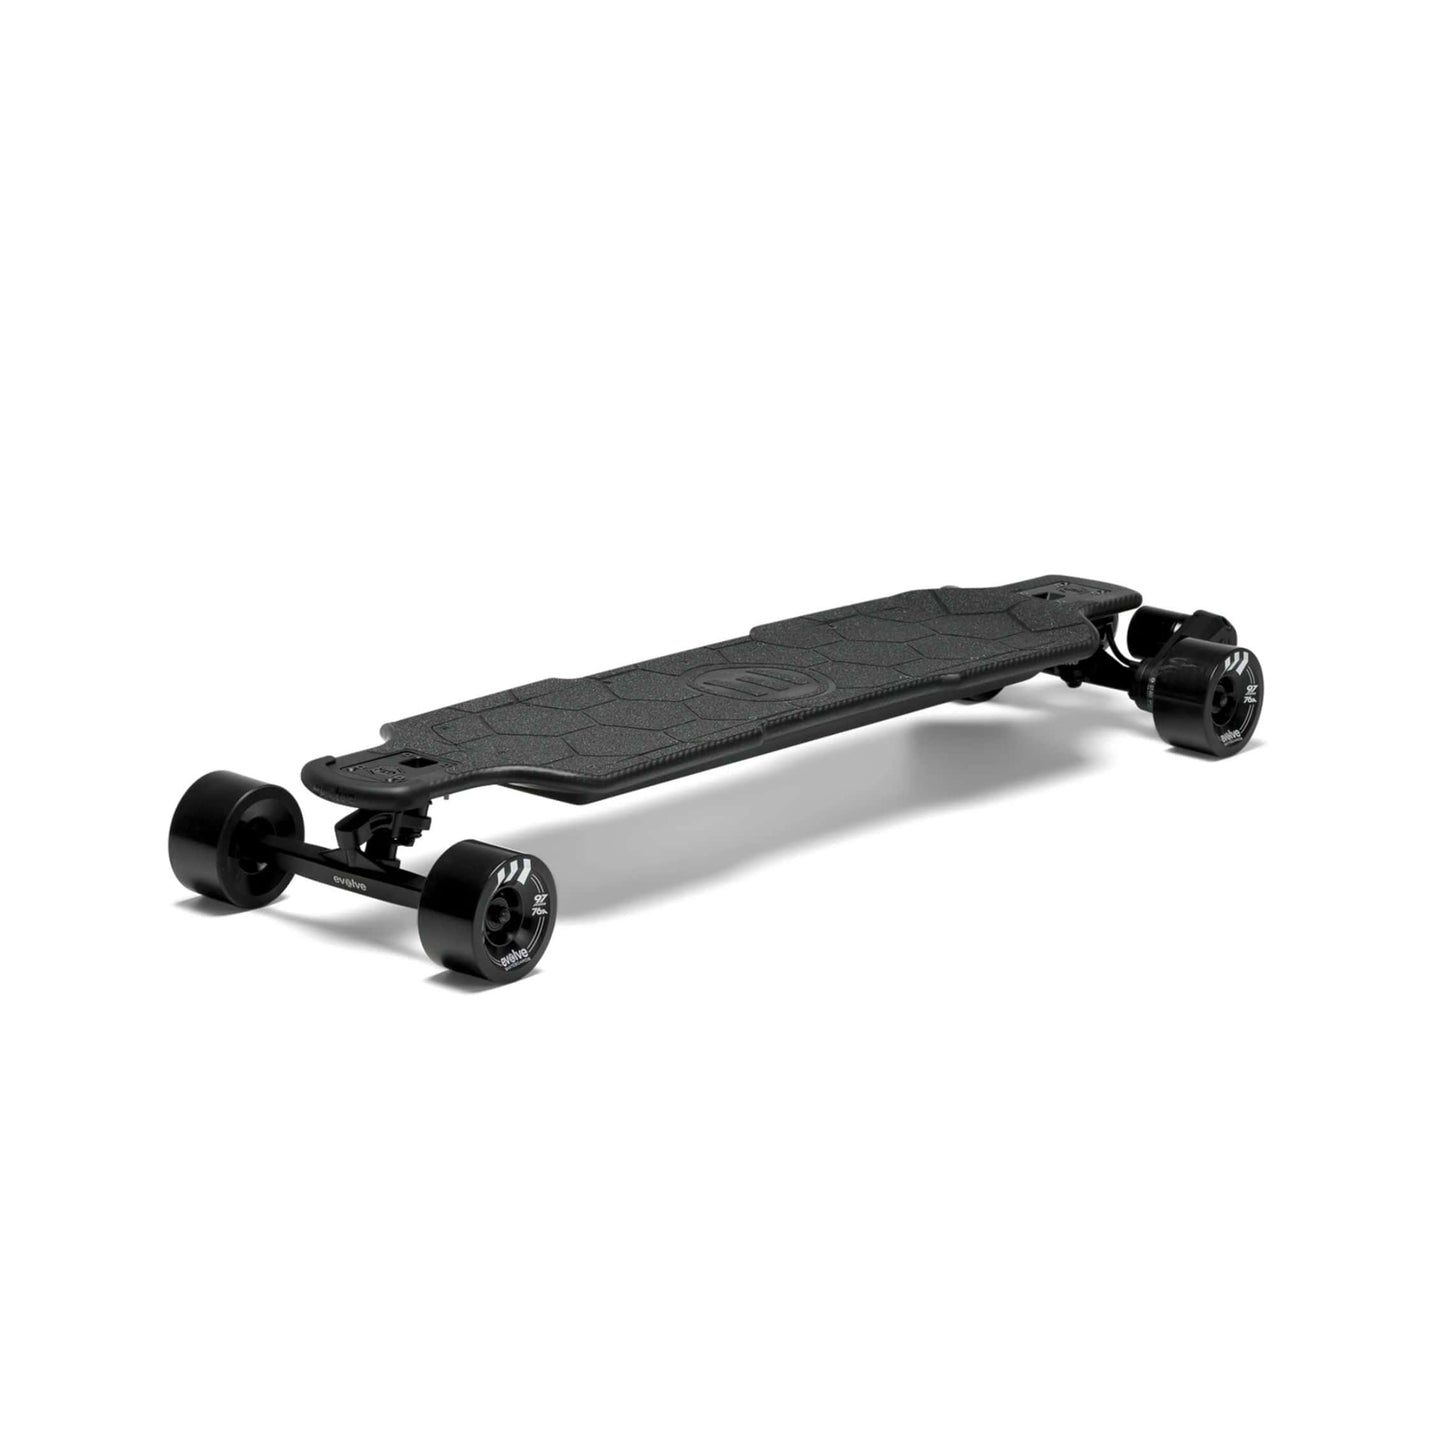 Evolve Carbon GTR 2 in 1 Electric Skateboard